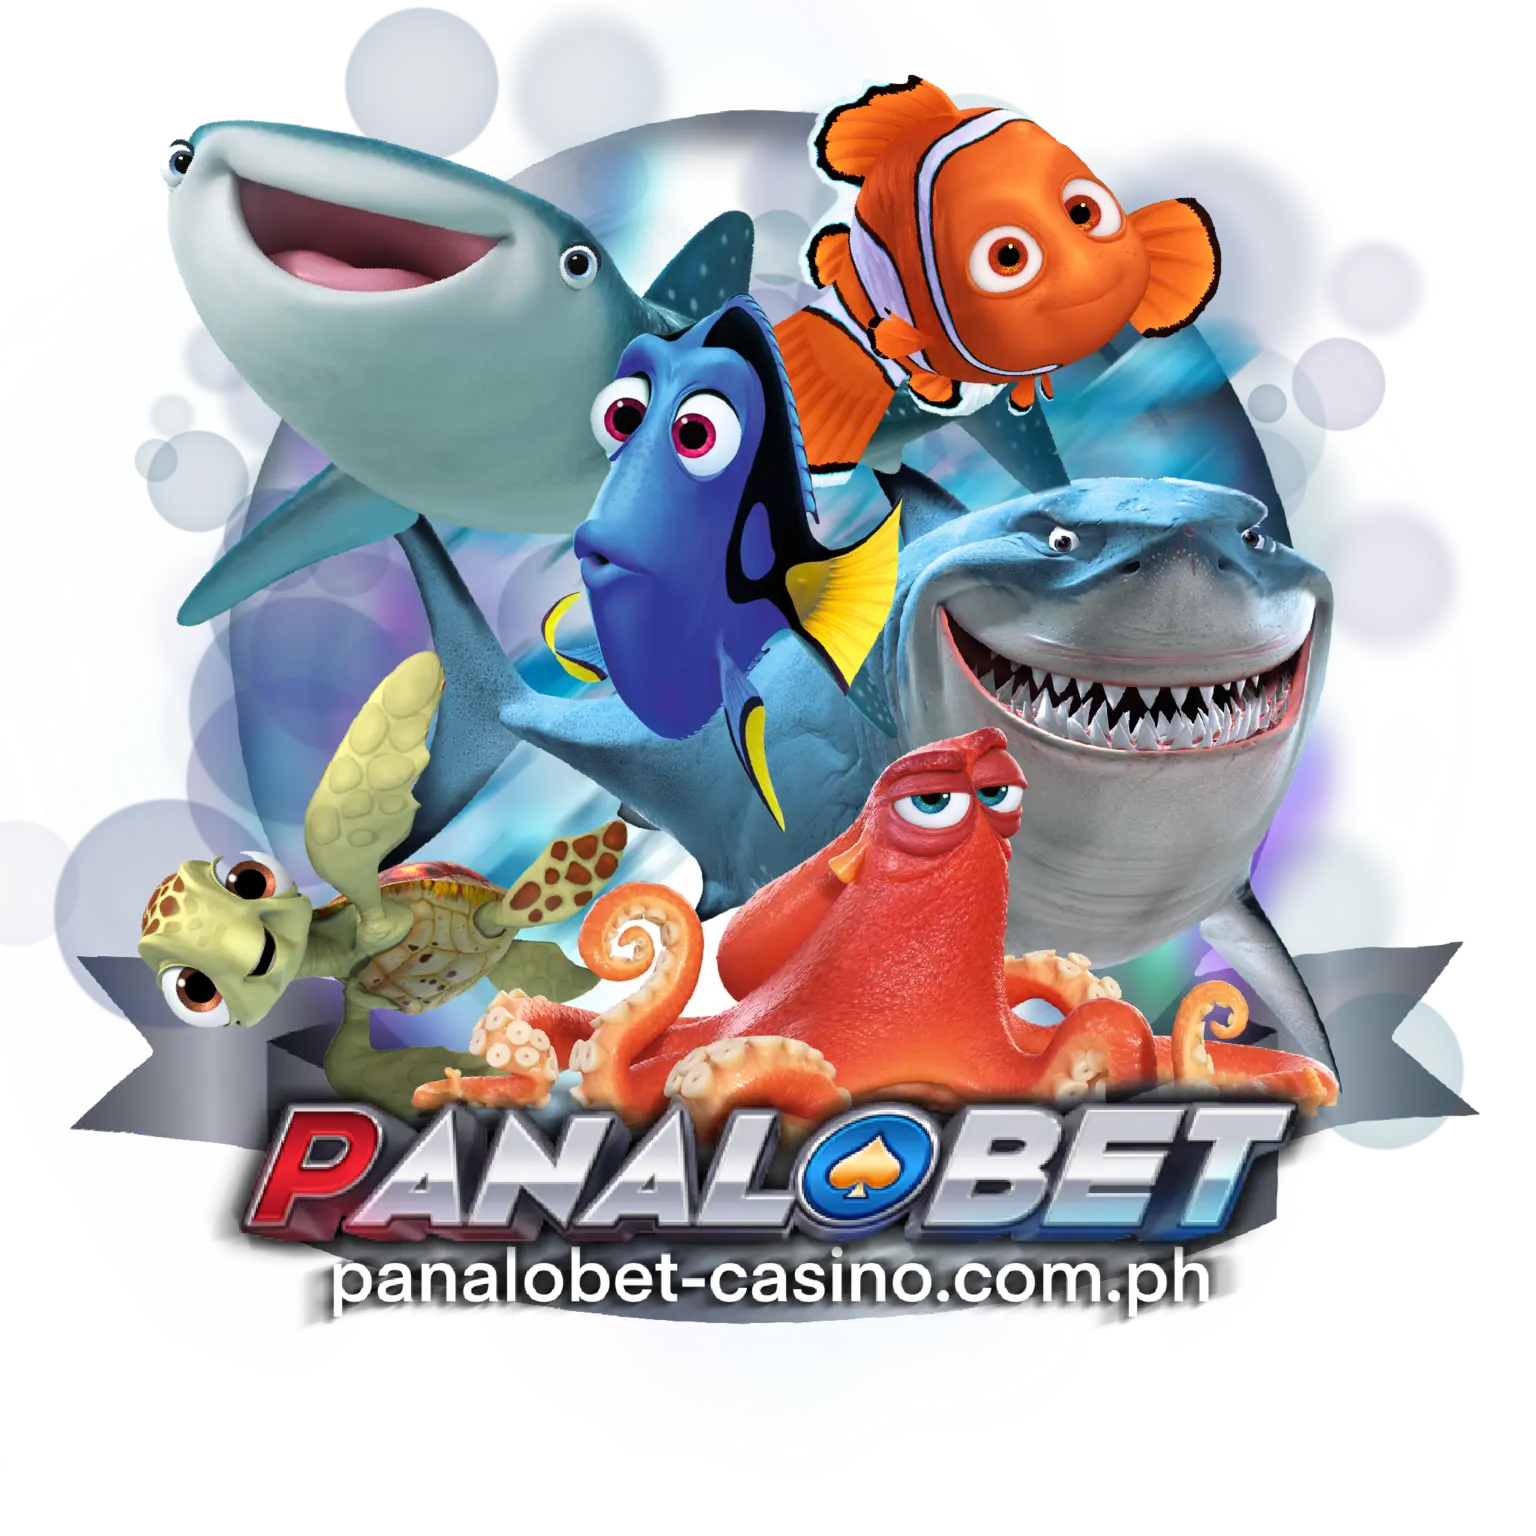 PANALOBET Online Casino Fishing game